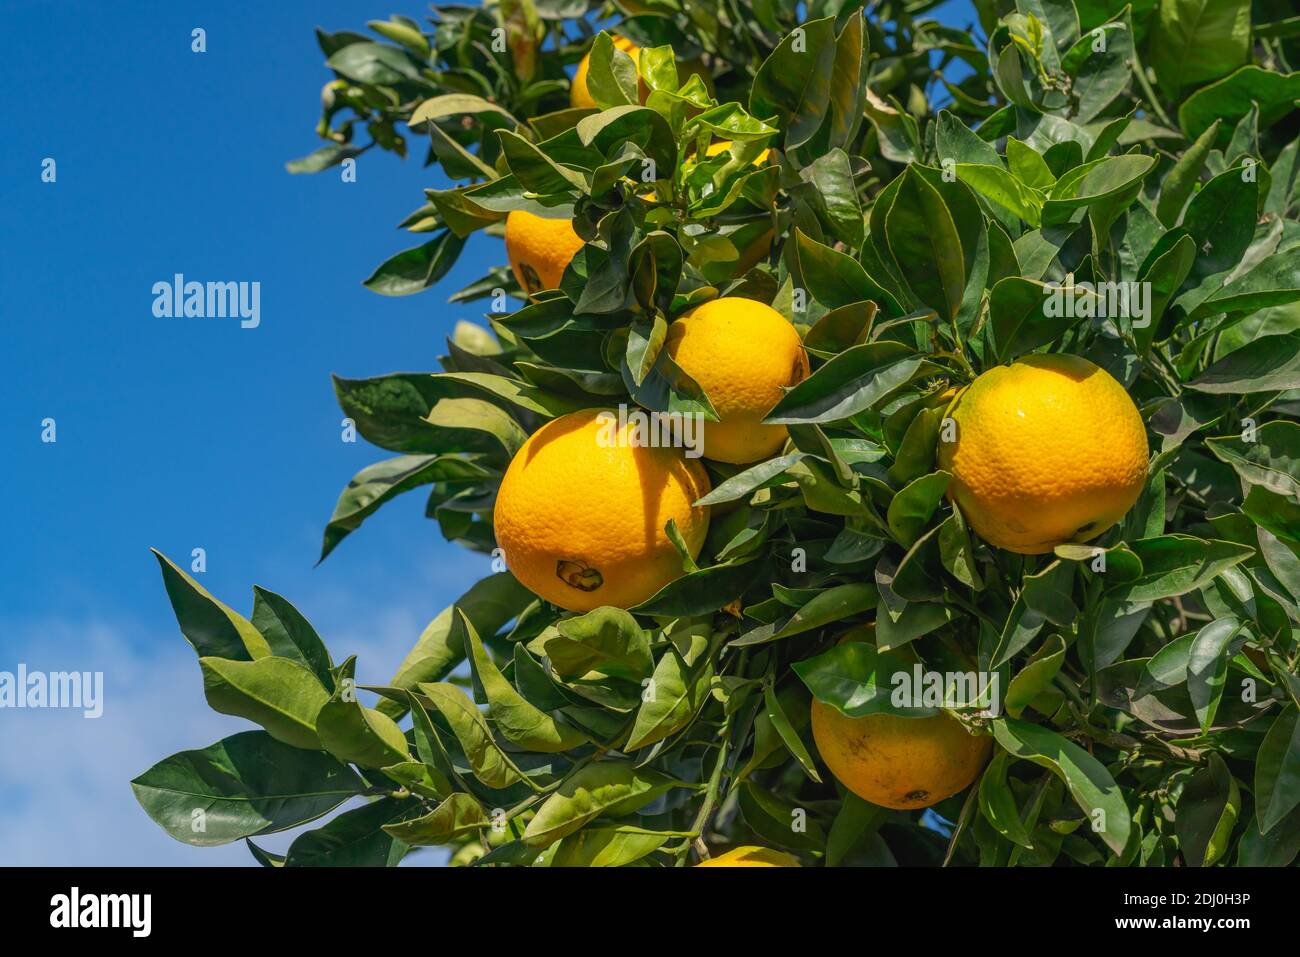 Frutas de naranja de cerca. Árbol anaranjado que lleva las frutas crecidas completas. Foto de stock